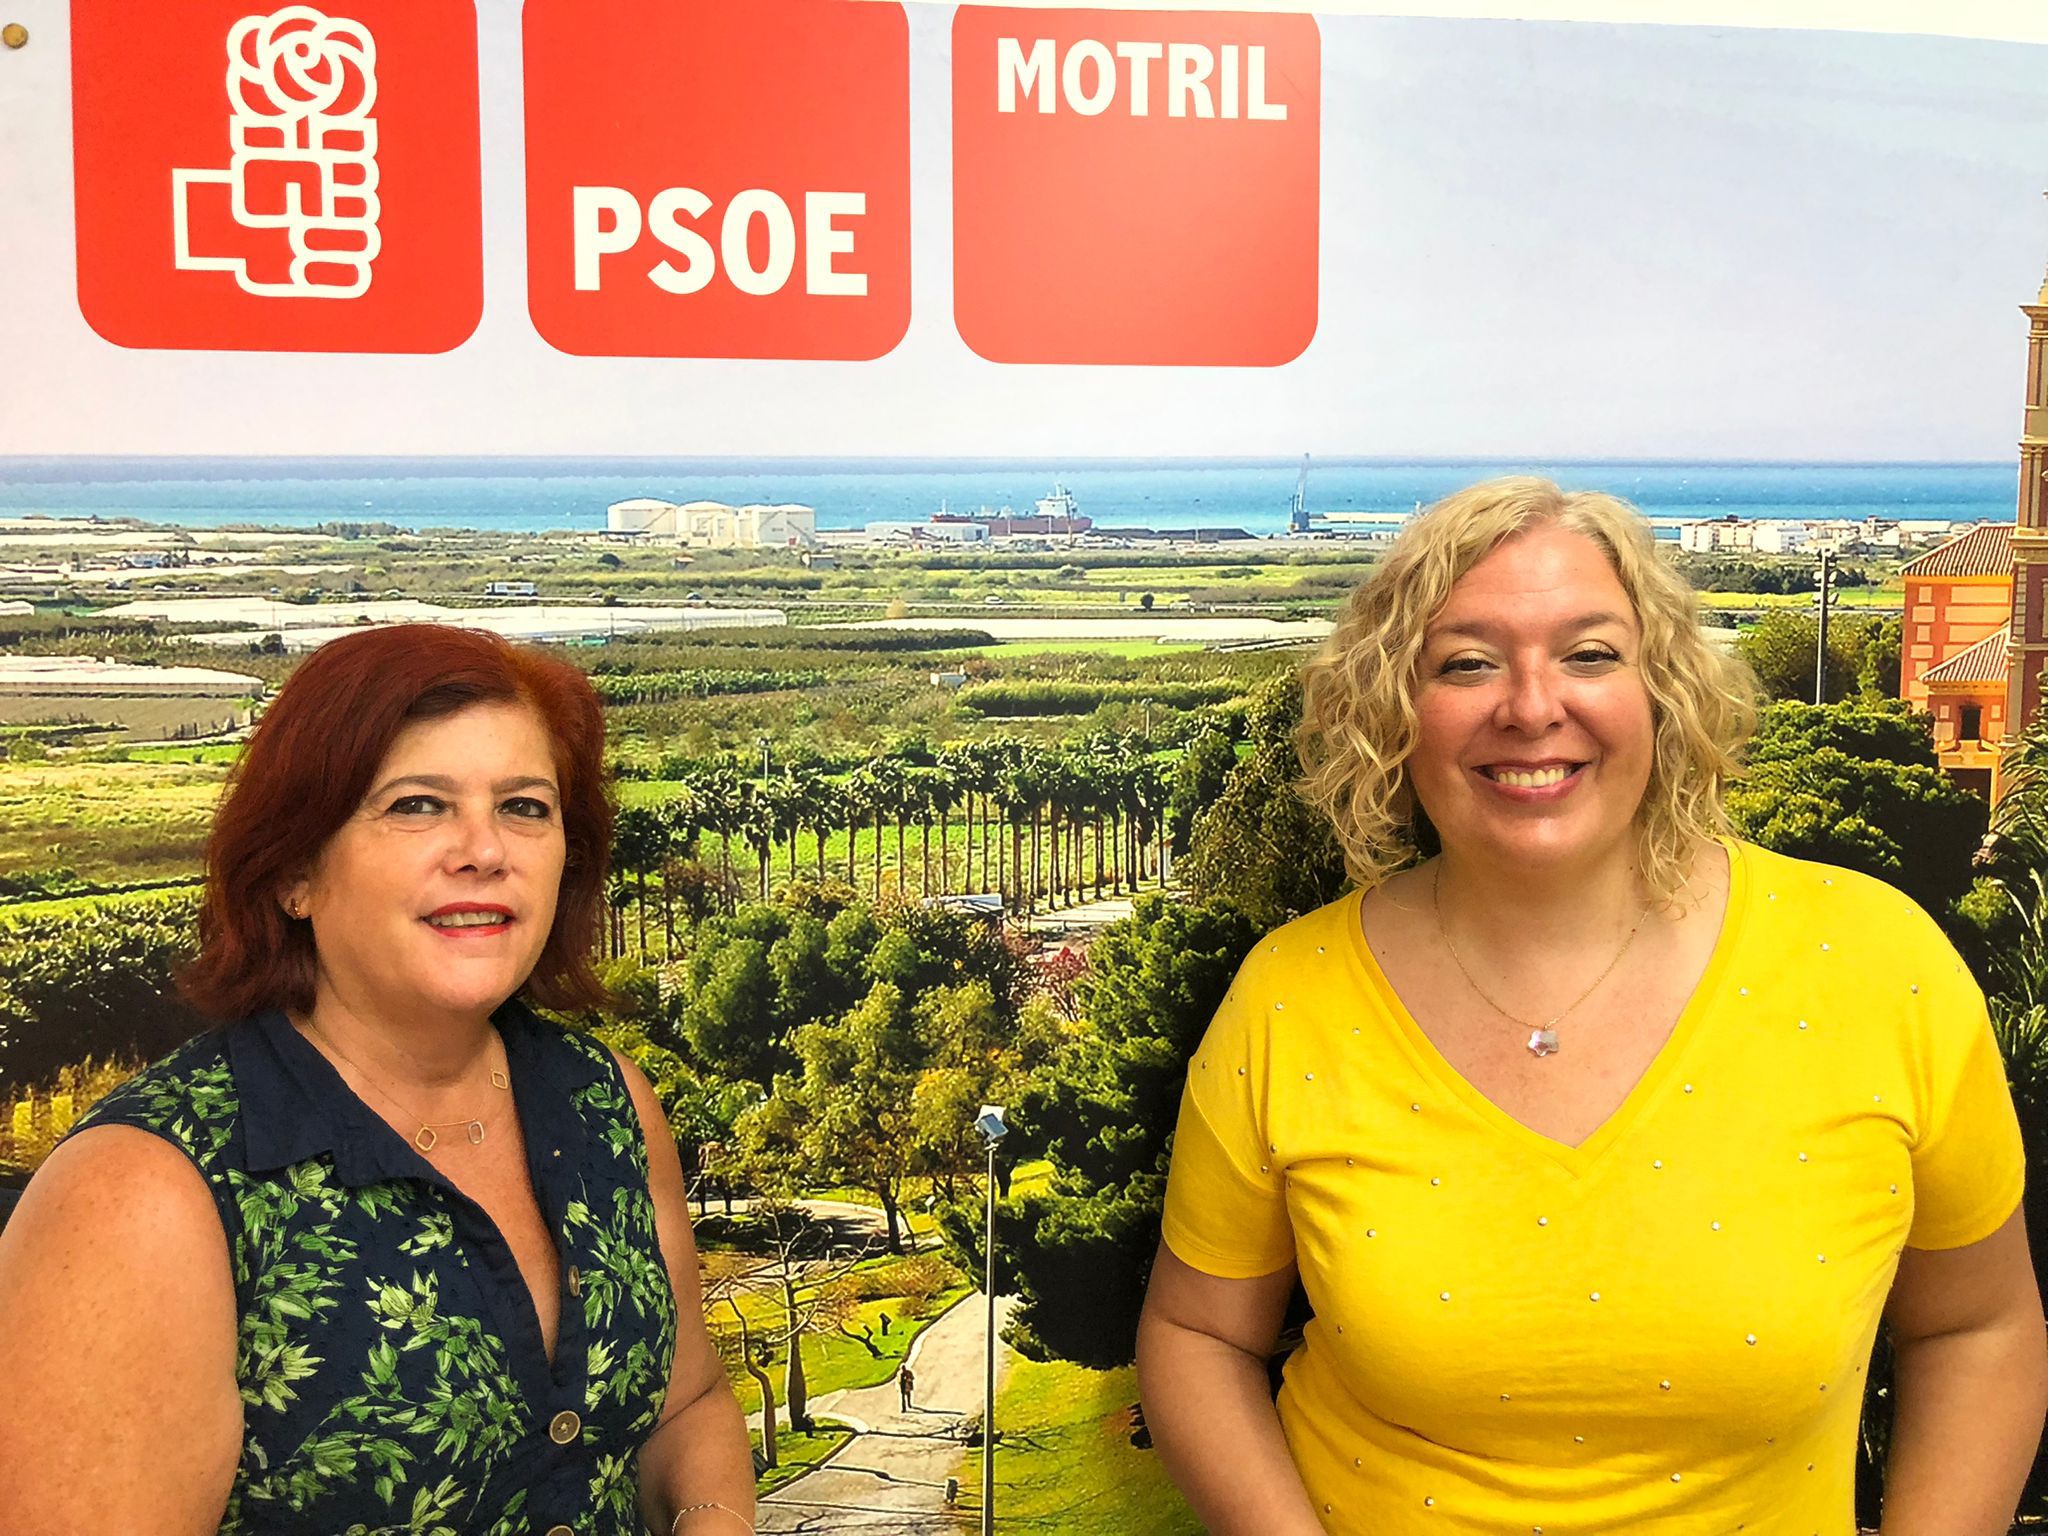 El PSOE afirma que el Gobierno Central ha impulsado proyectos de trascendencia como las canalizaciones de Rules, la protección del litoral o la nueva rotonda en la N-340
